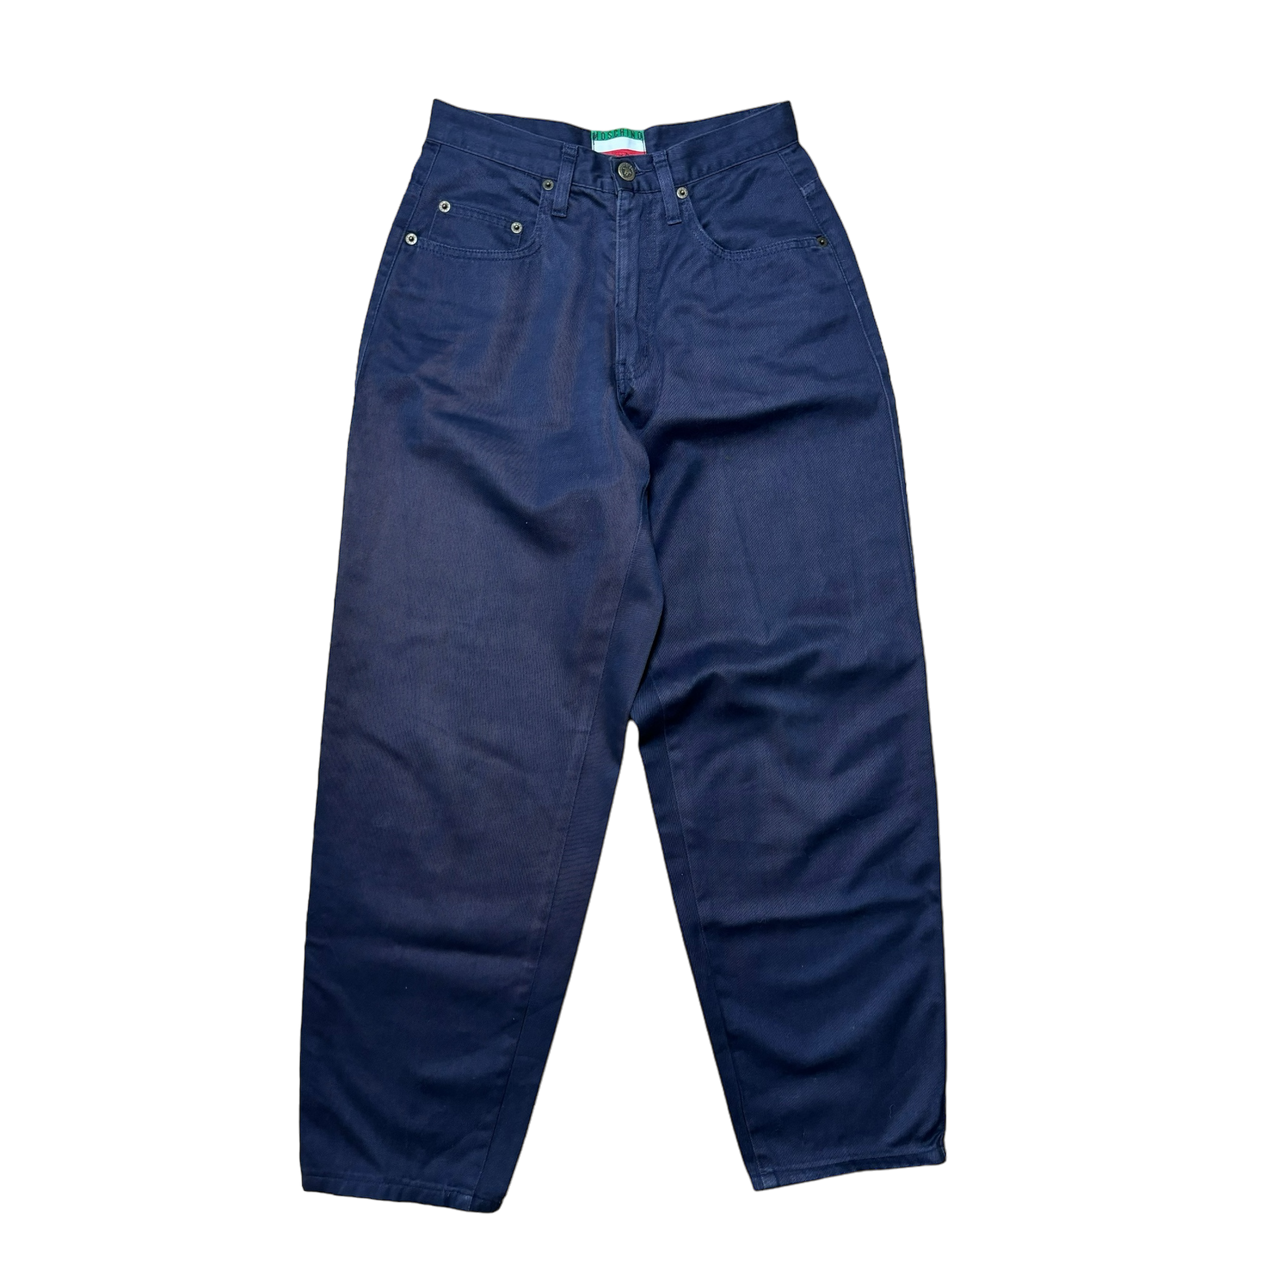 Moschino, Cotton Pants (29 x 27)